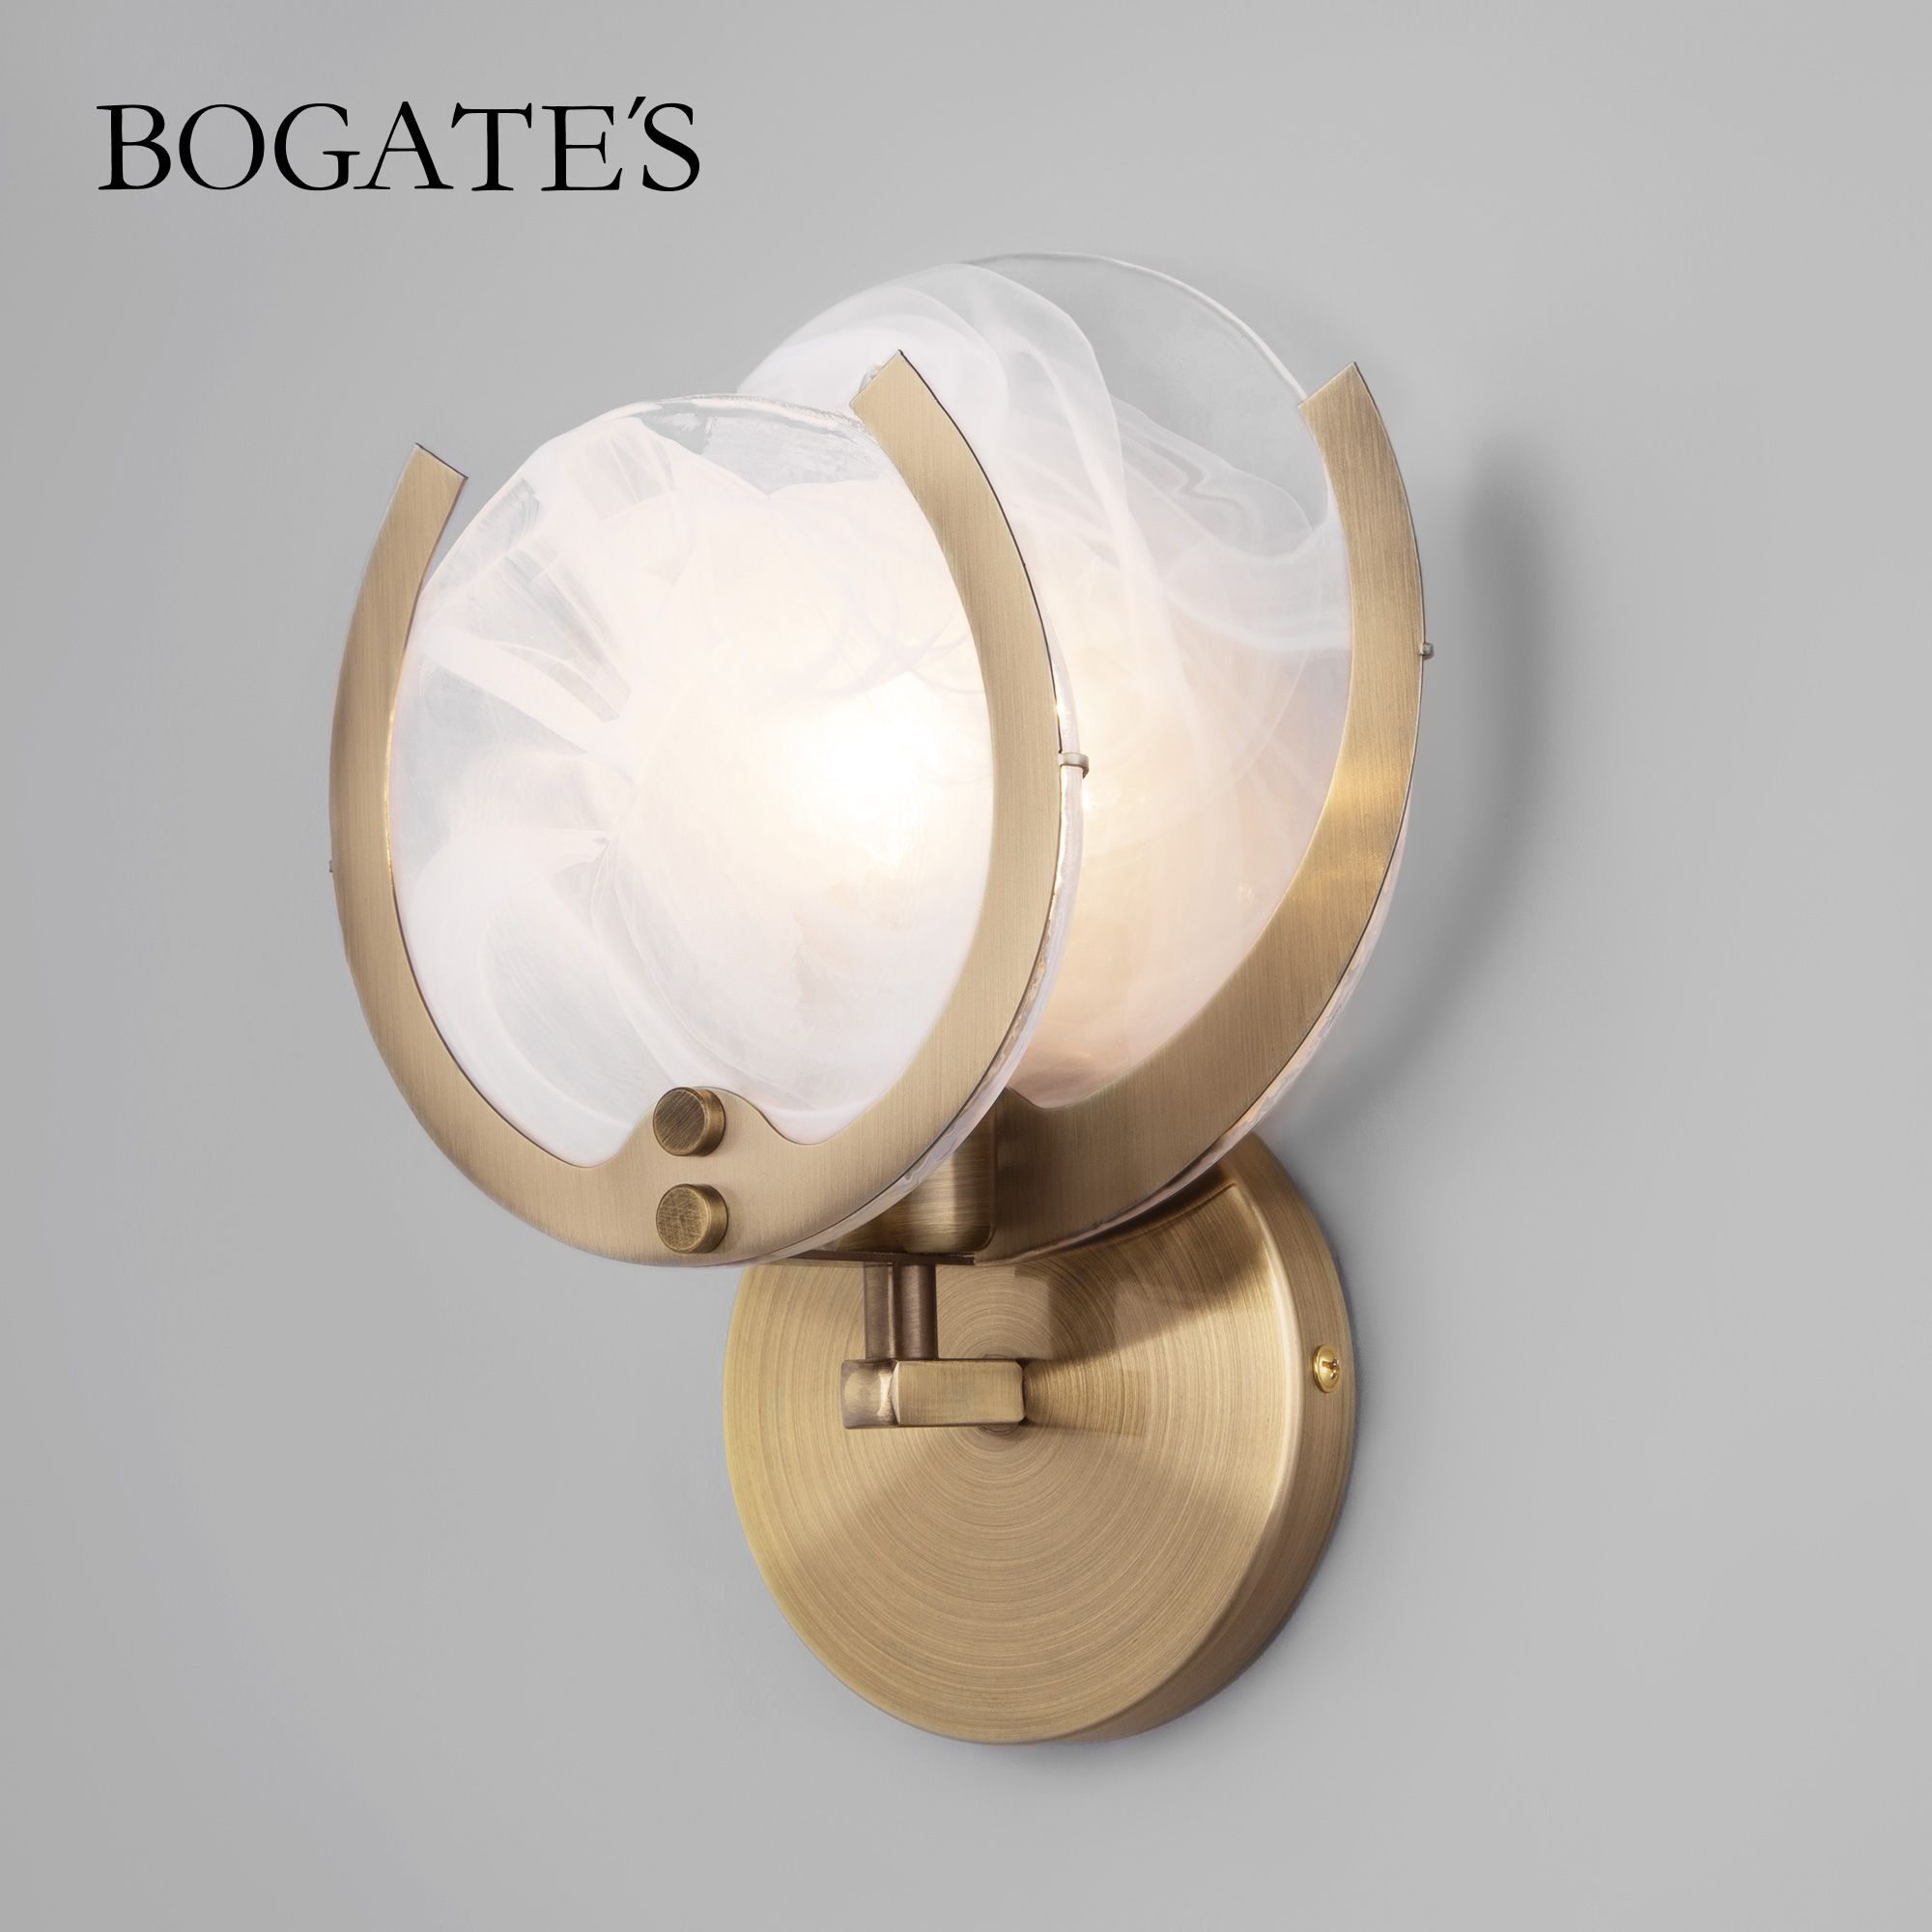 Настенный светильник Bogate's Galicia 354/1 античная бронза белый плафон стекло E14